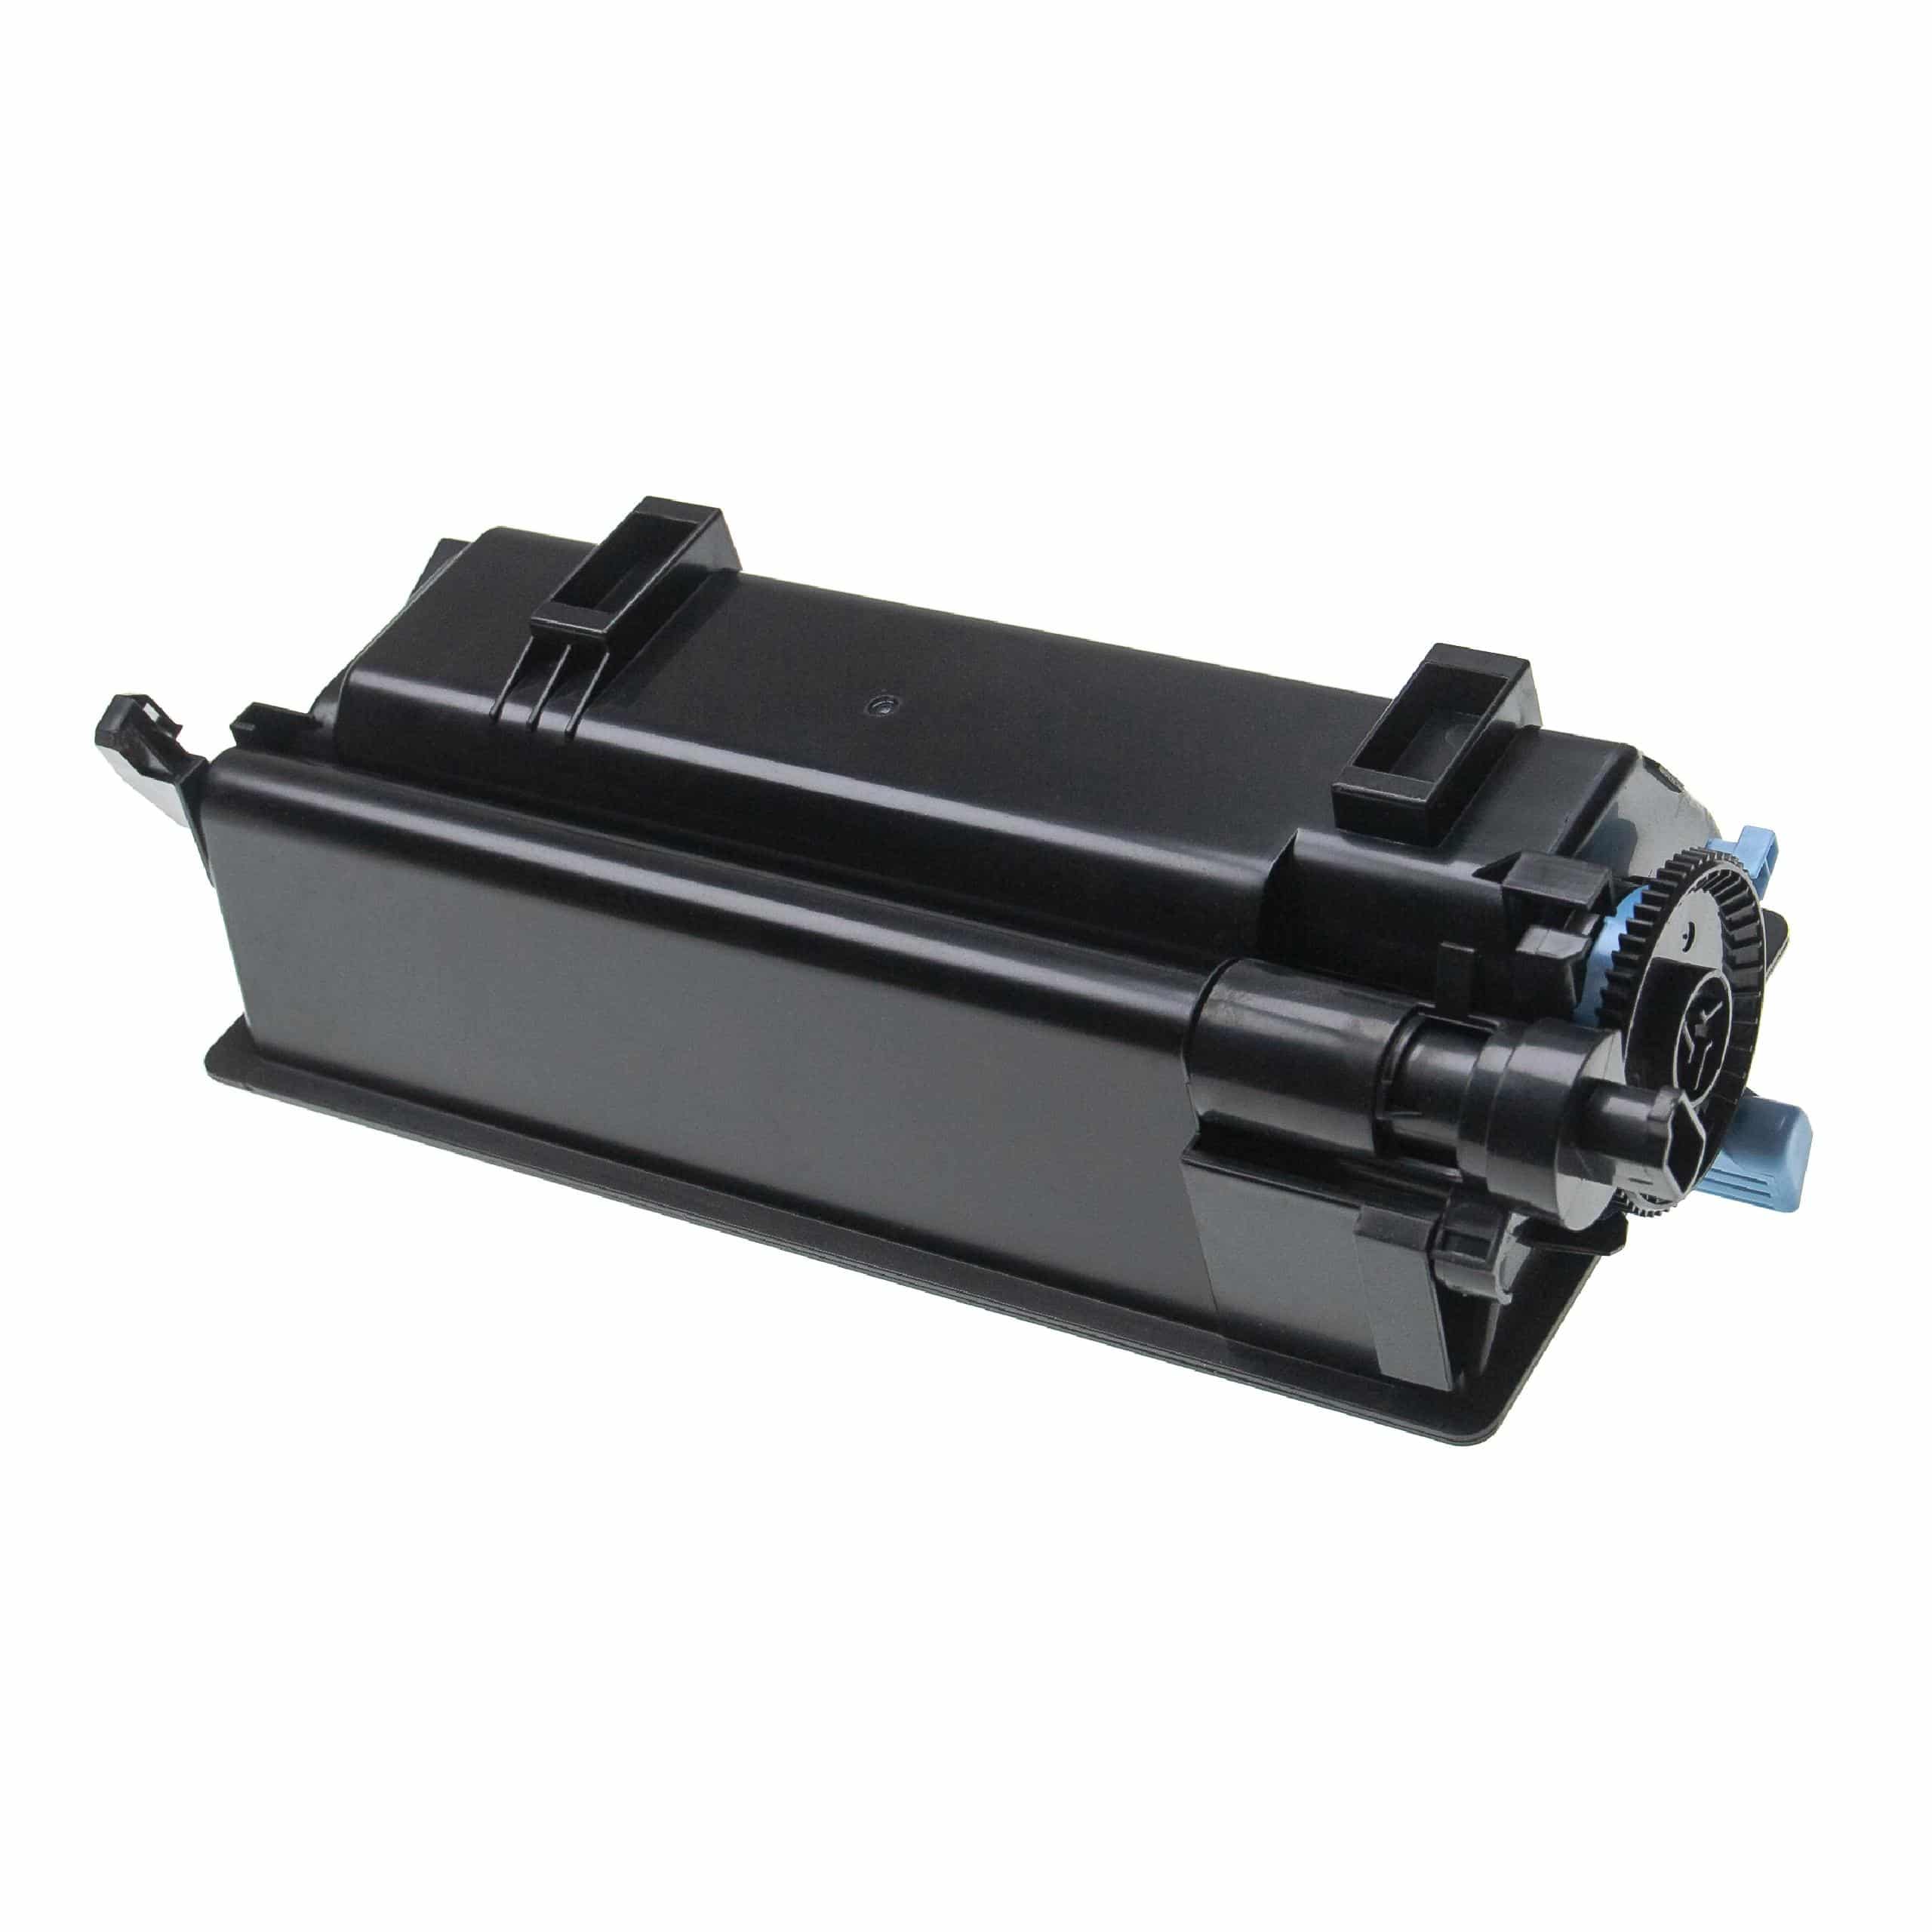 Toner sostituisce Kyocera TK-3160 per stampante Kyocera + vaschetta toner esausto - Nero